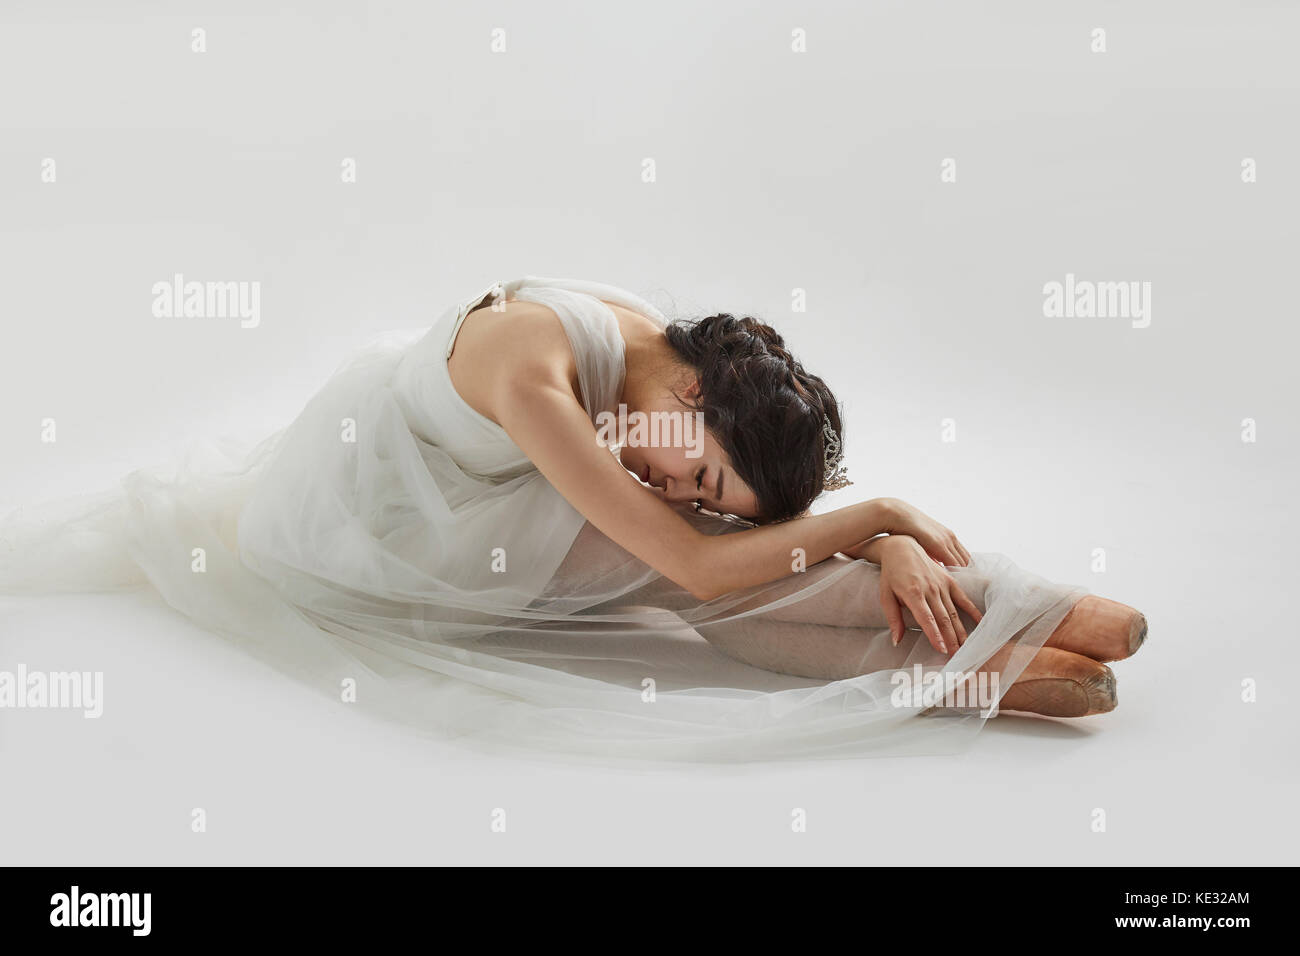 Vue latérale du jeune ballerine élégante en robe blanche Banque D'Images